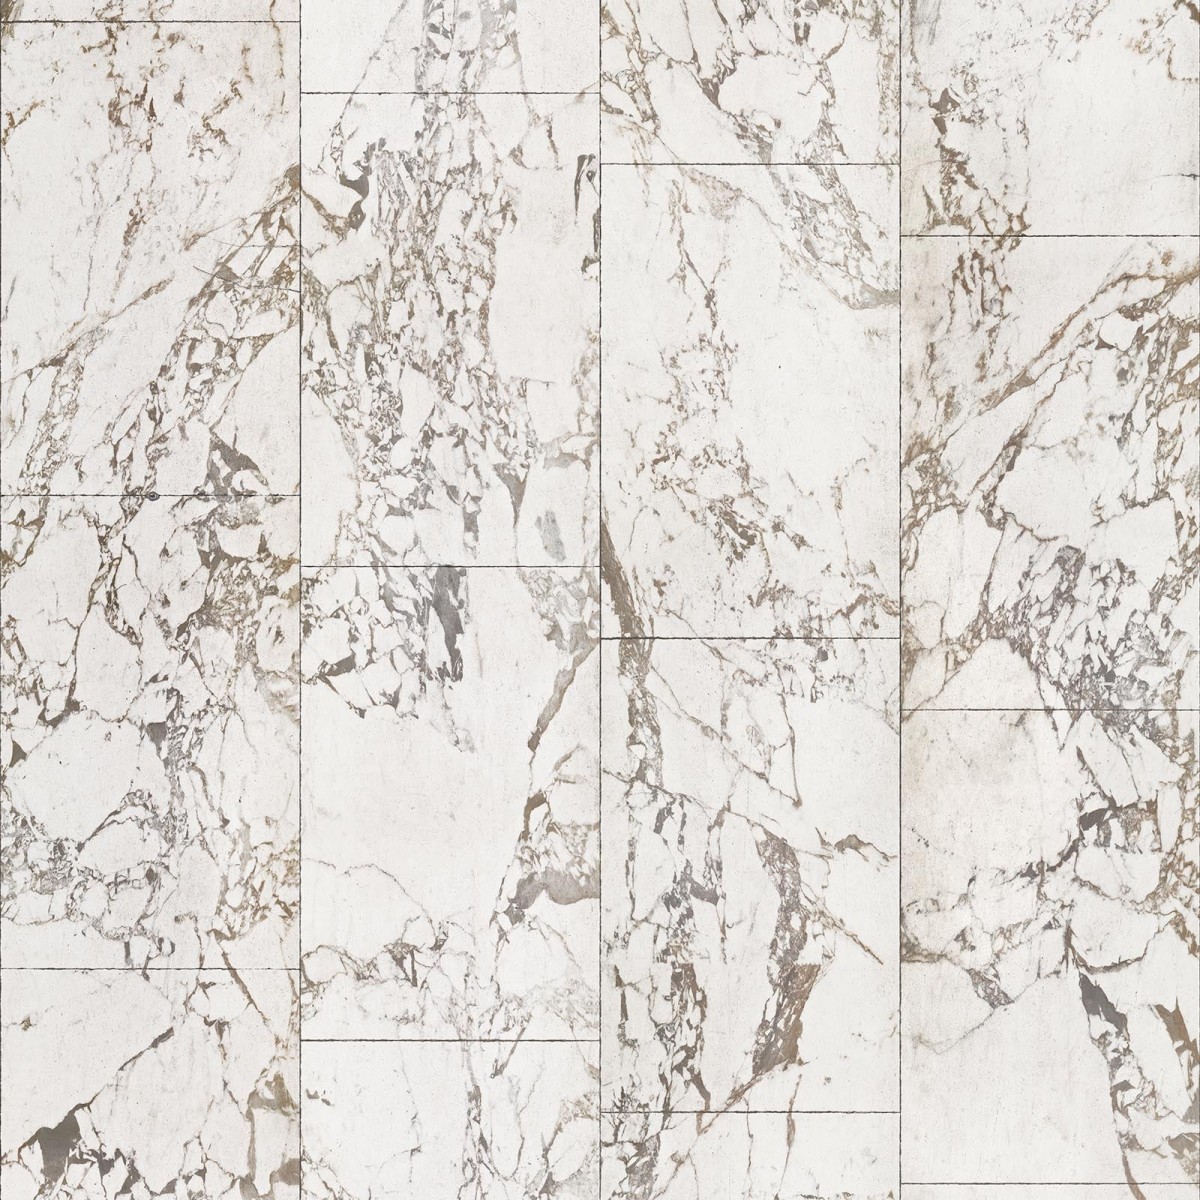 Tapet designer Materials Marble, Tiles 48.7x76.9cm, White by Piet Hein Eek, NLXL, 4.9mp / rola, Tapet Exclusivist 